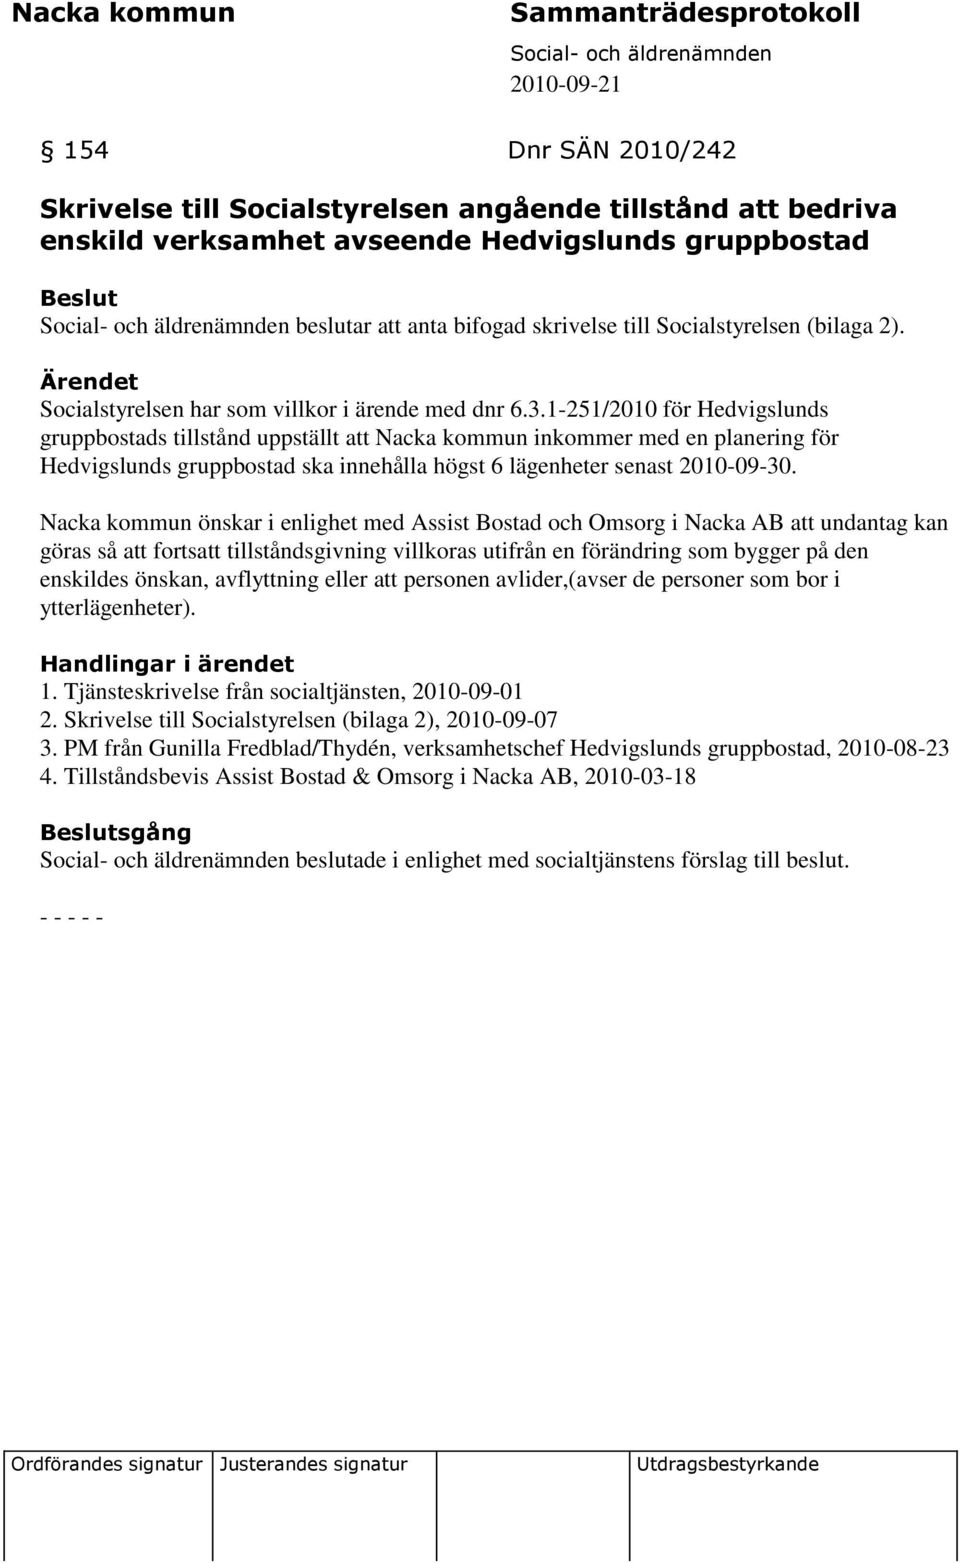 1-251/2010 för Hedvigslunds gruppbostads tillstånd uppställt att Nacka kommun inkommer med en planering för Hedvigslunds gruppbostad ska innehålla högst 6 lägenheter senast 2010-09-30.